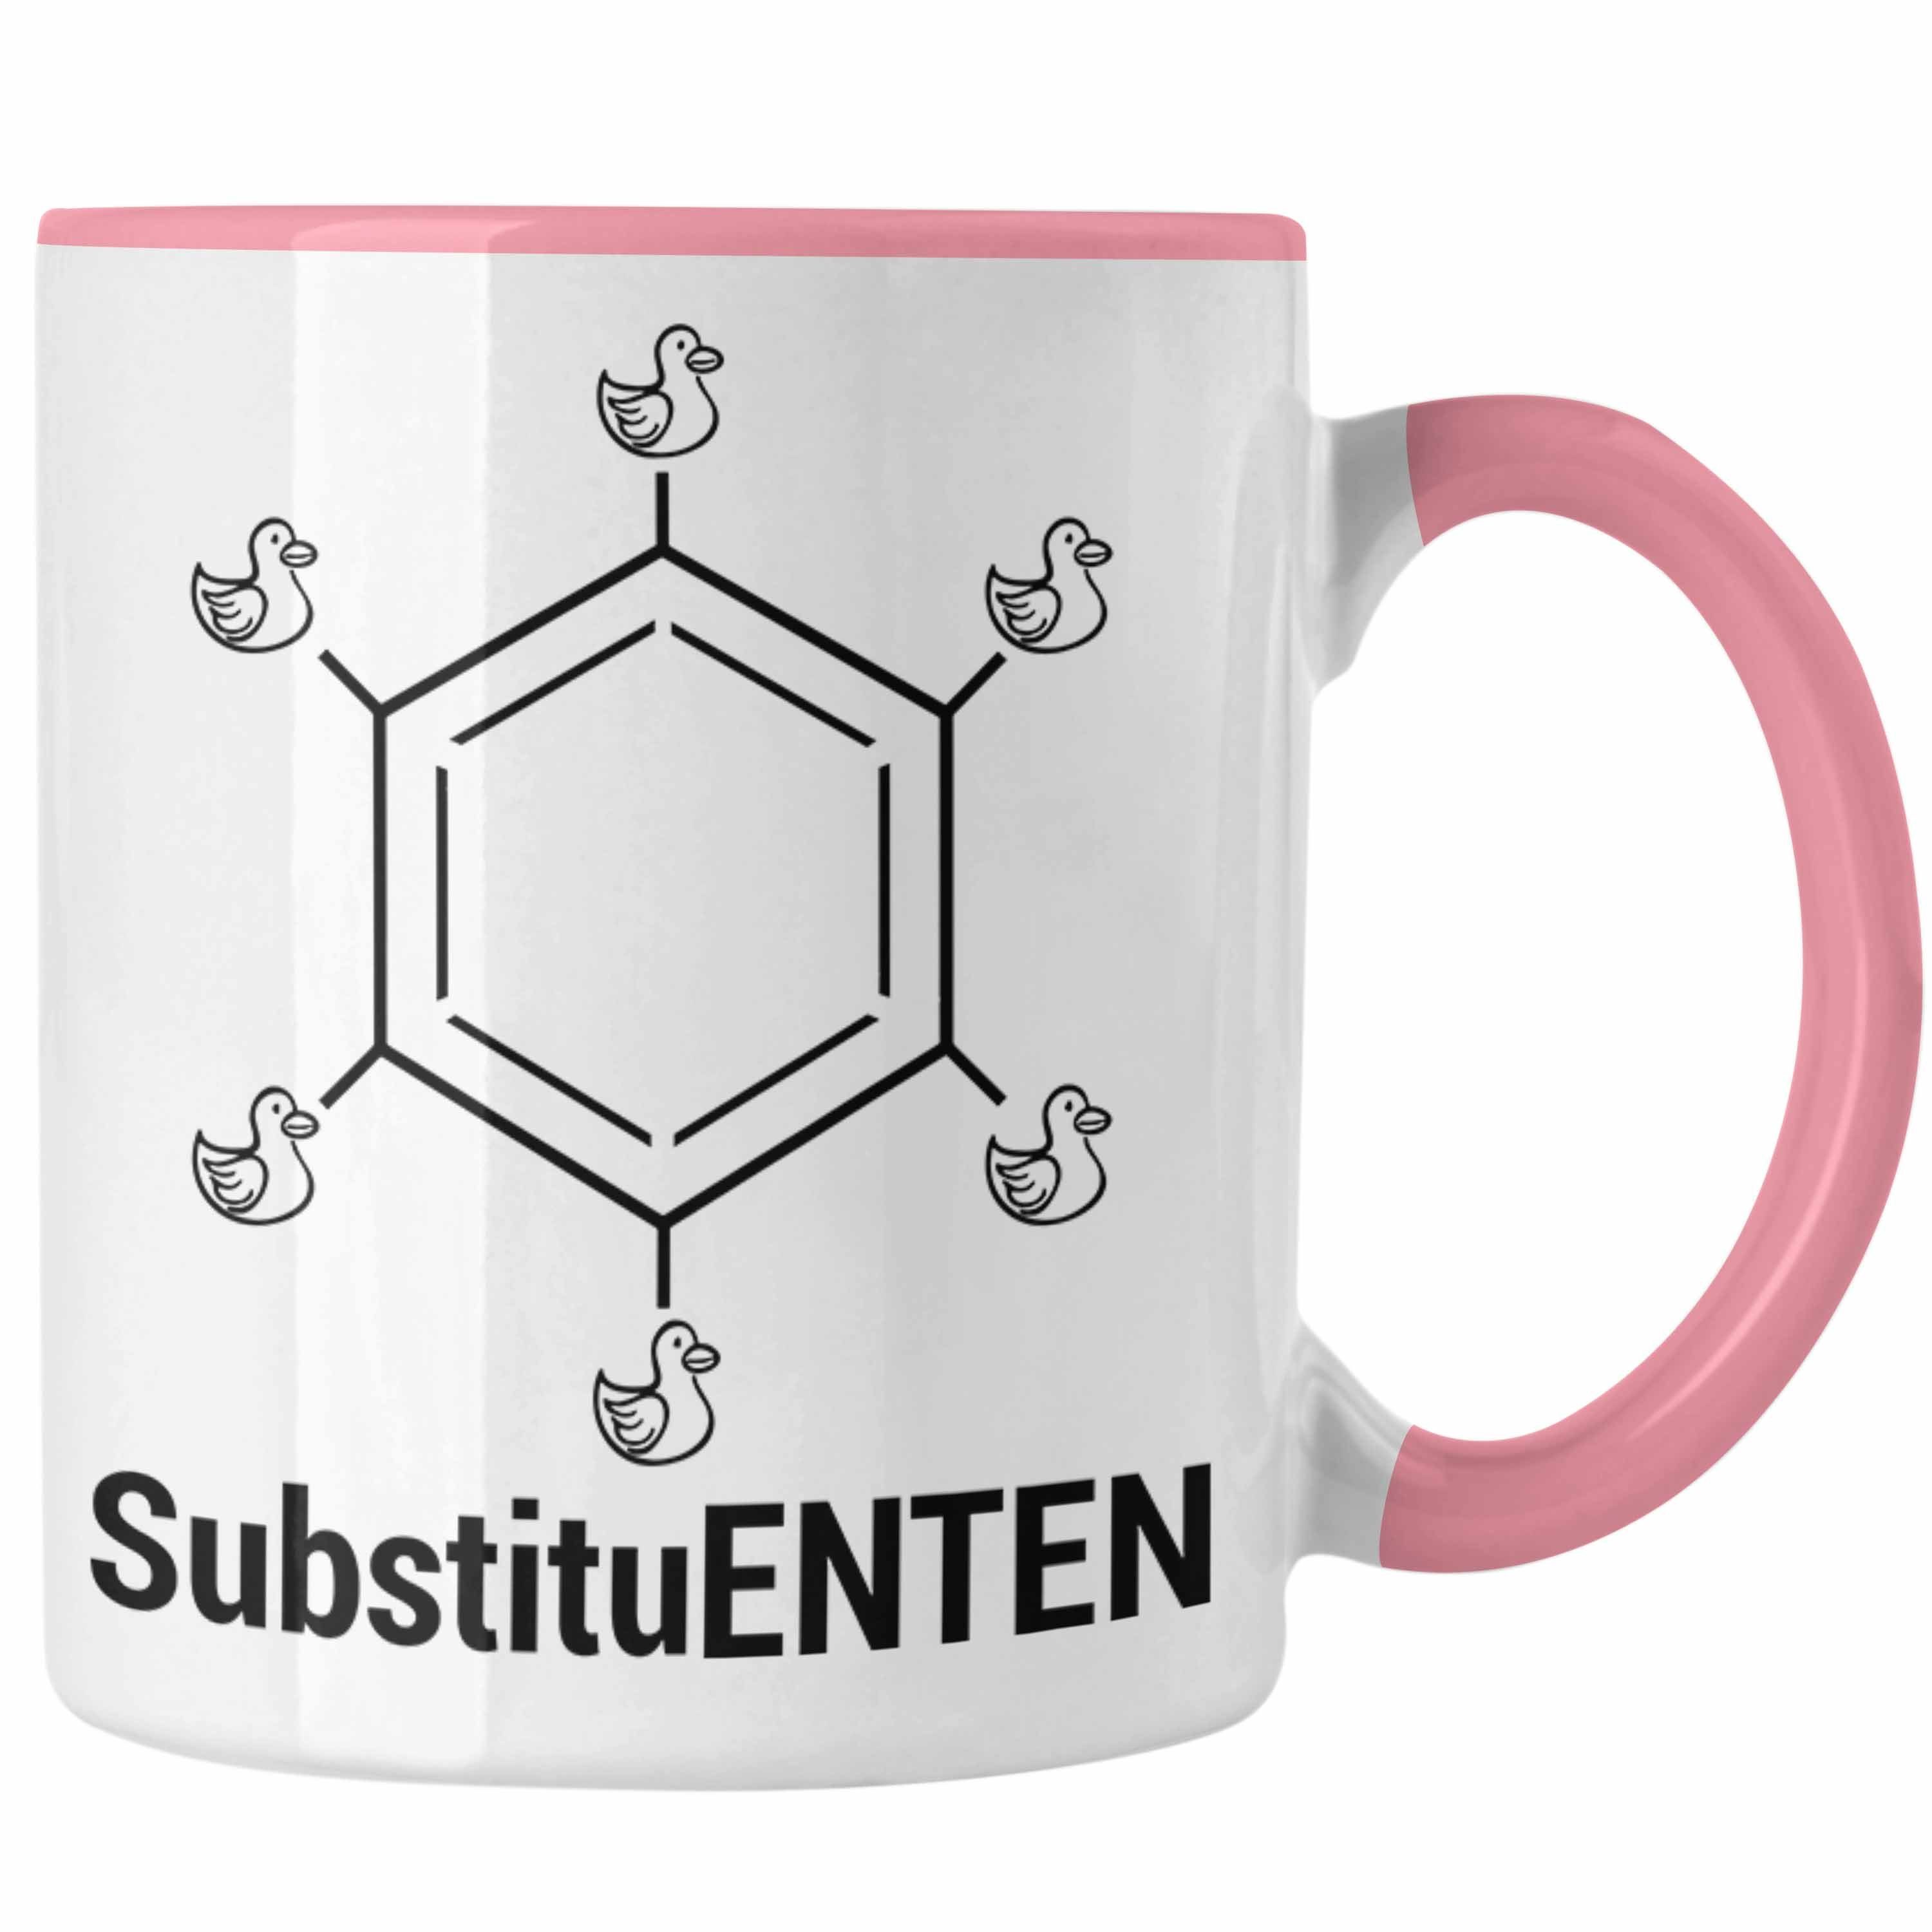 Trendation Rosa Kaffee Tasse Chemie Tasse Ente Organische SubstituENTEN Witz Chemiker Chemie